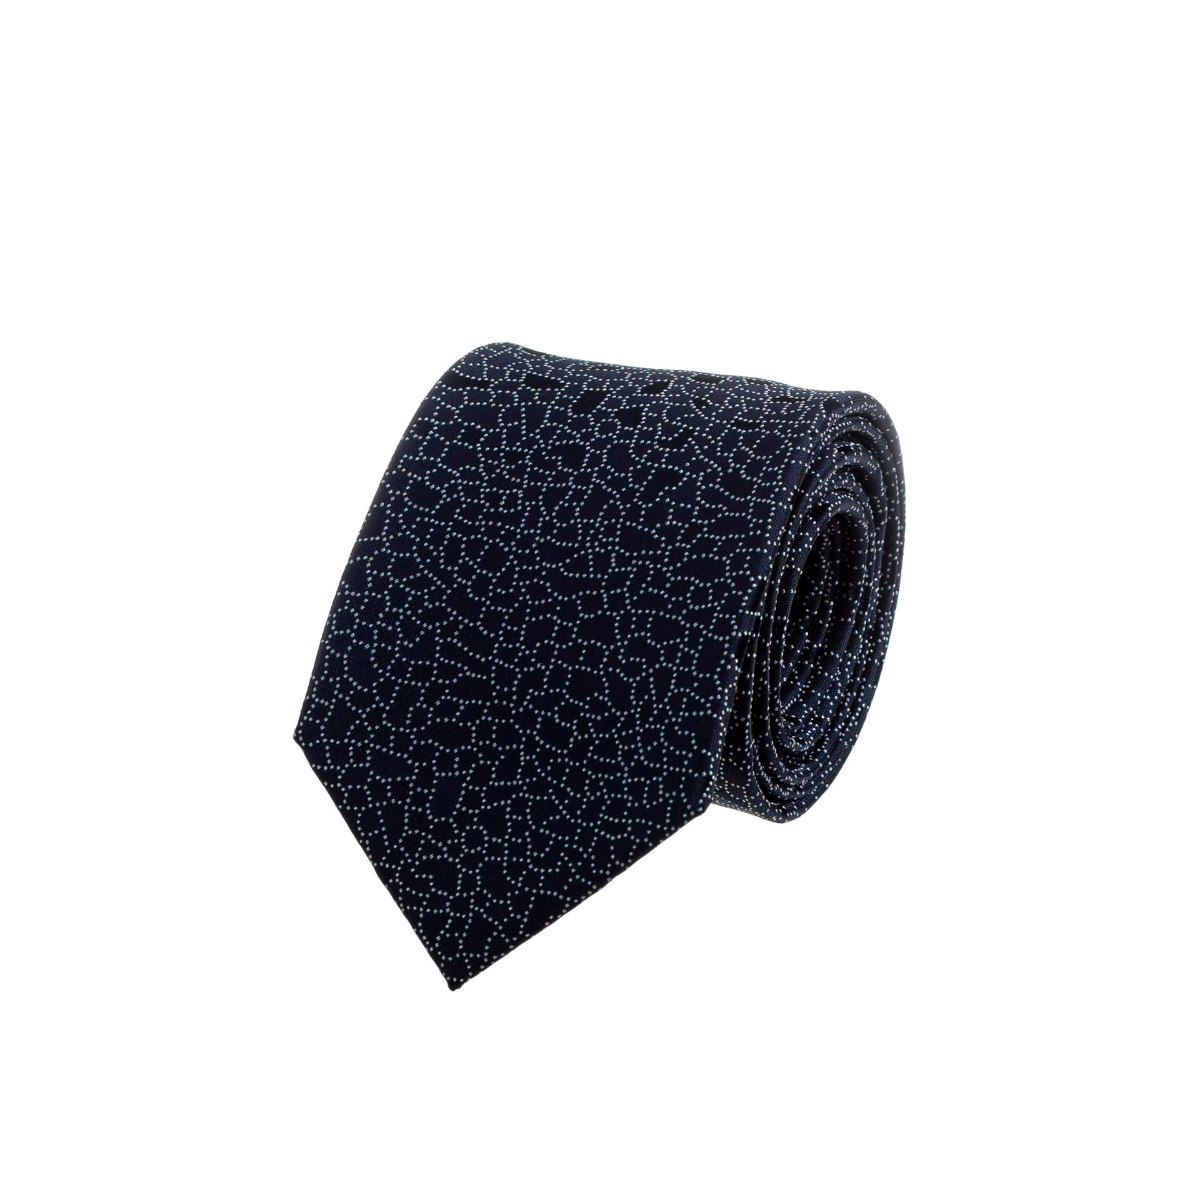 עניבה משורטטת כחול כהה